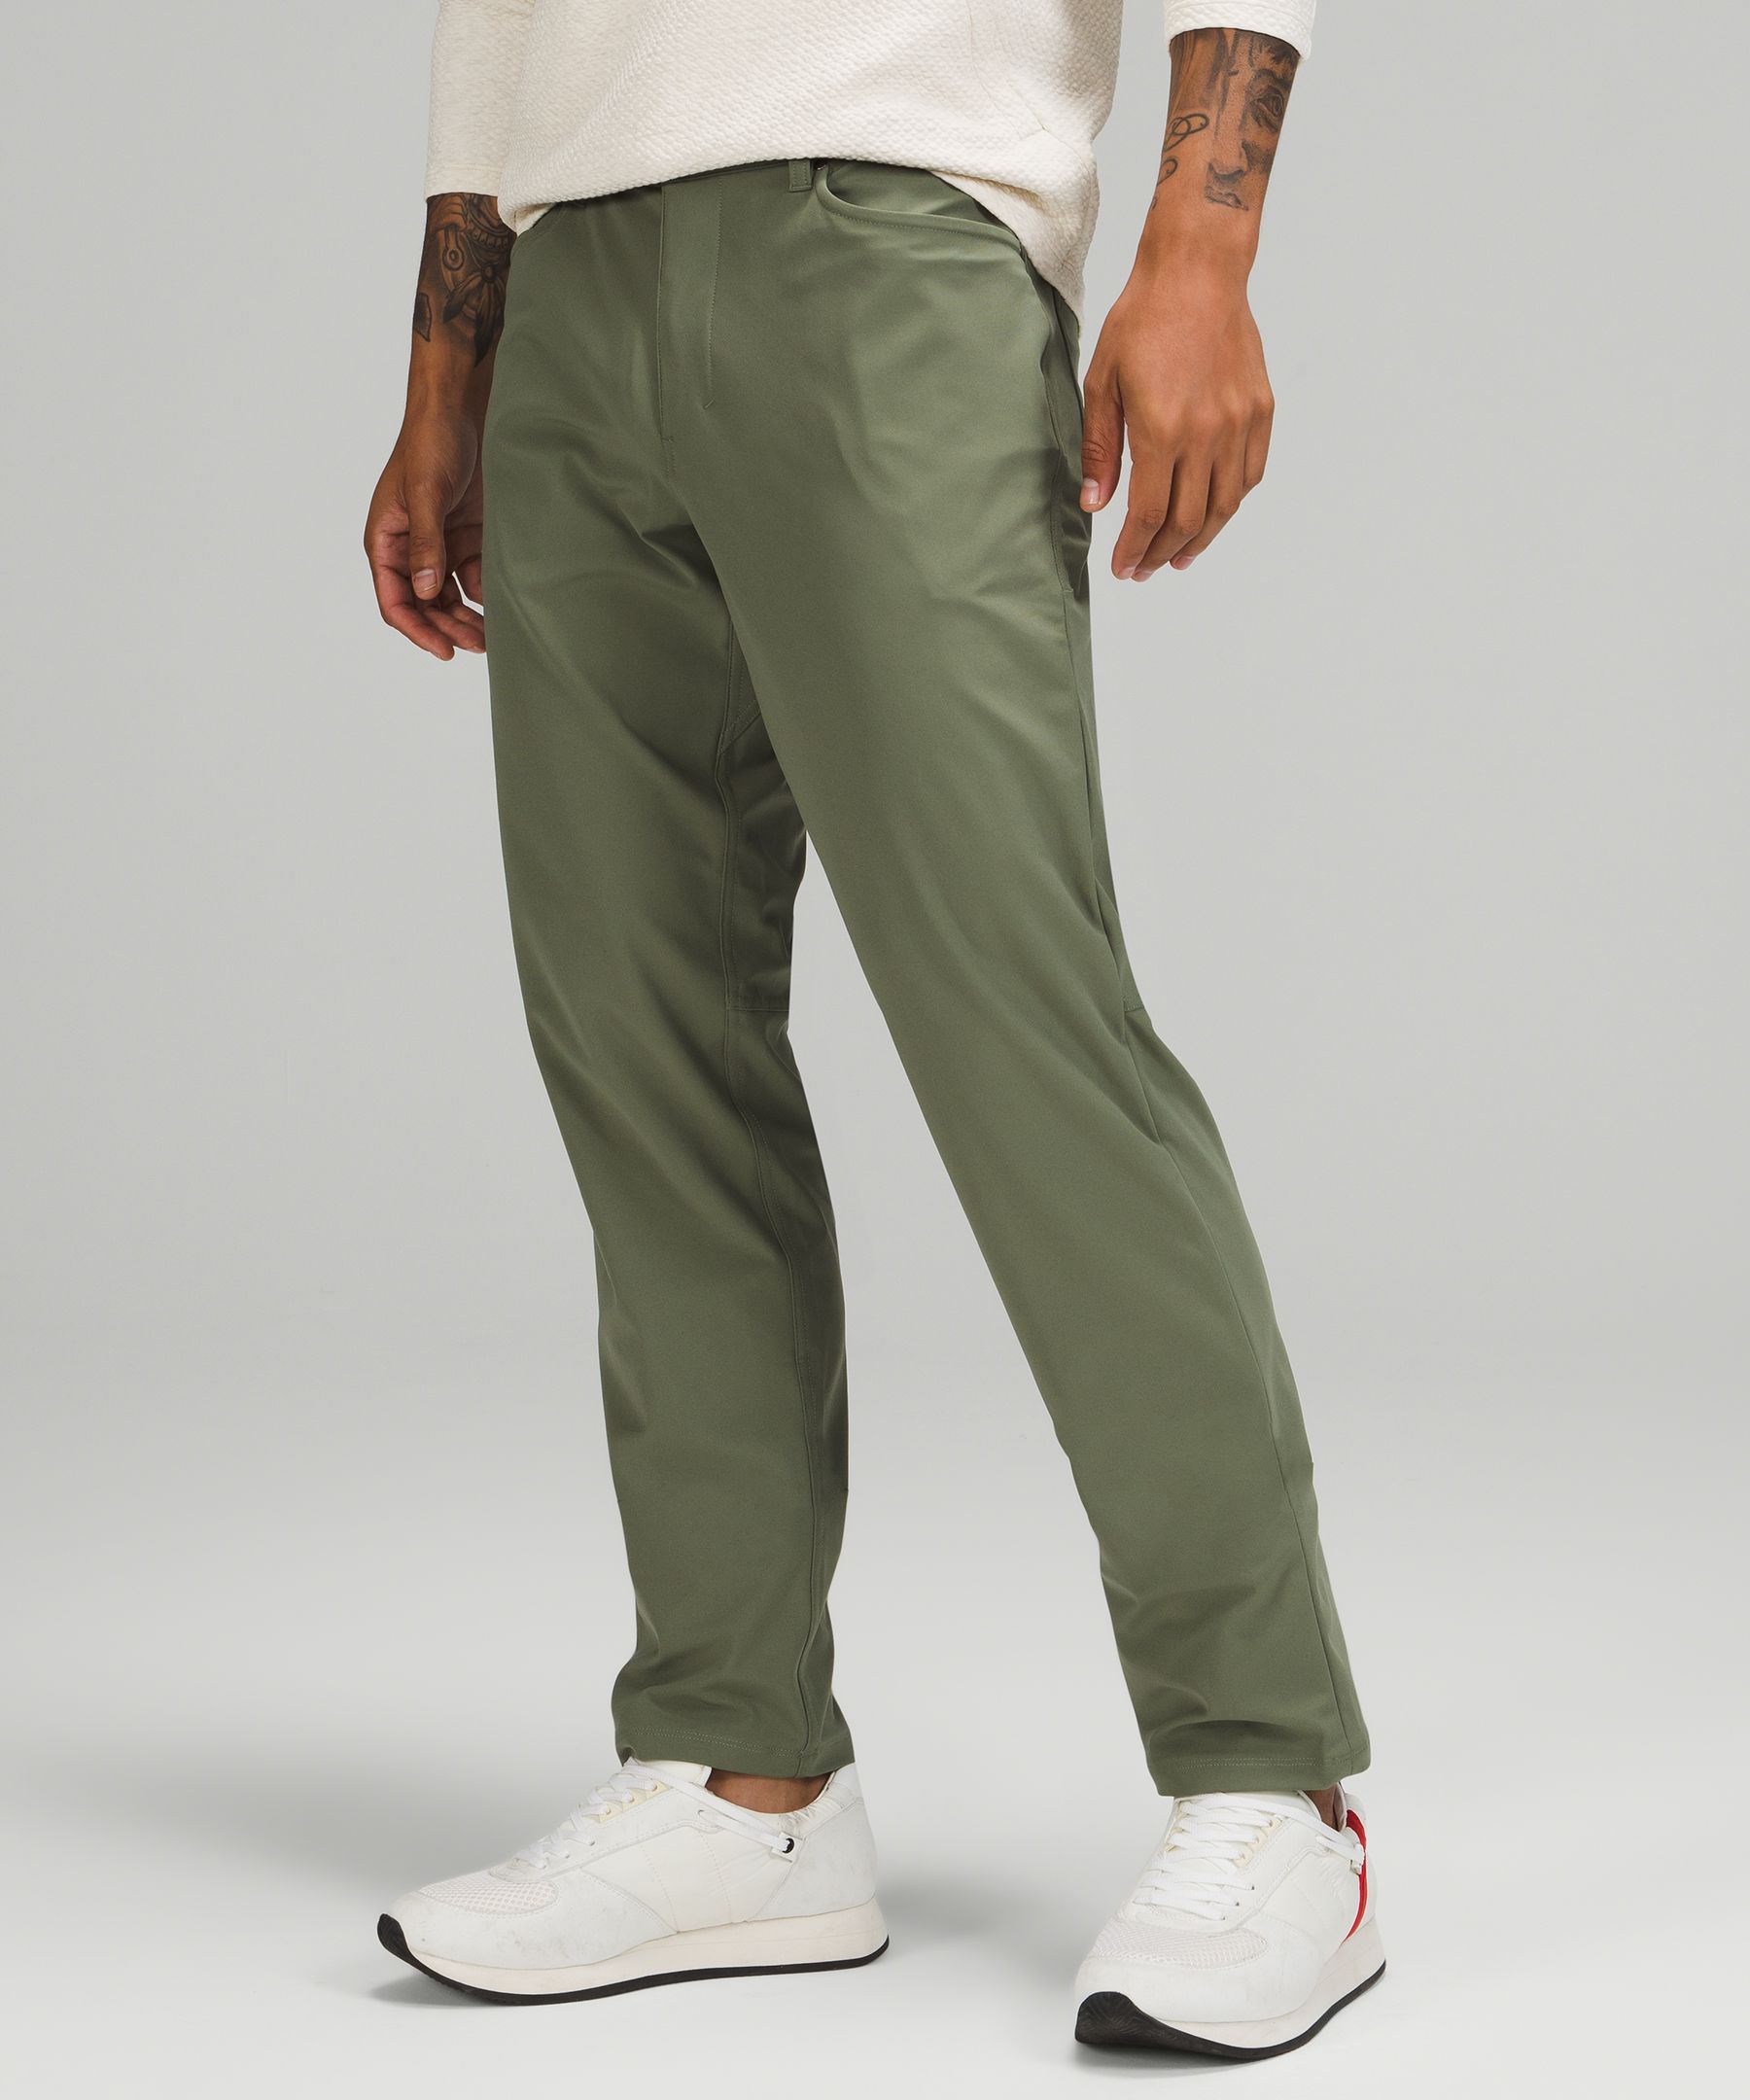 Lululemon Abc Classic-fit Pants 32